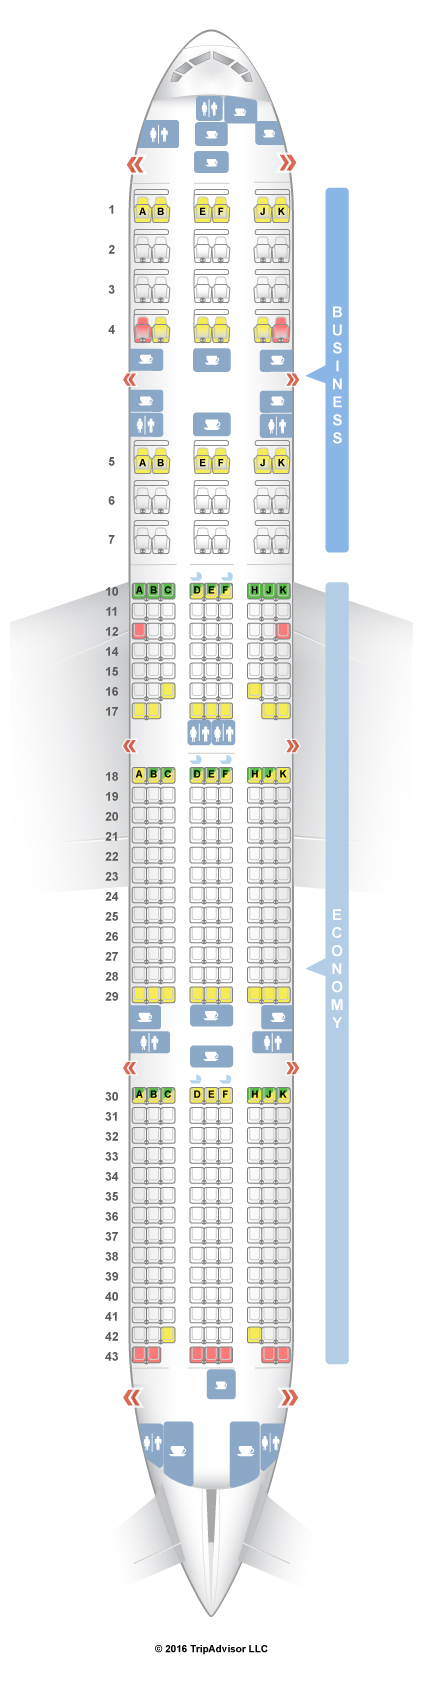 SeatGuru Seat Map Qatar Airways Boeing 777-300ER (77W) V3